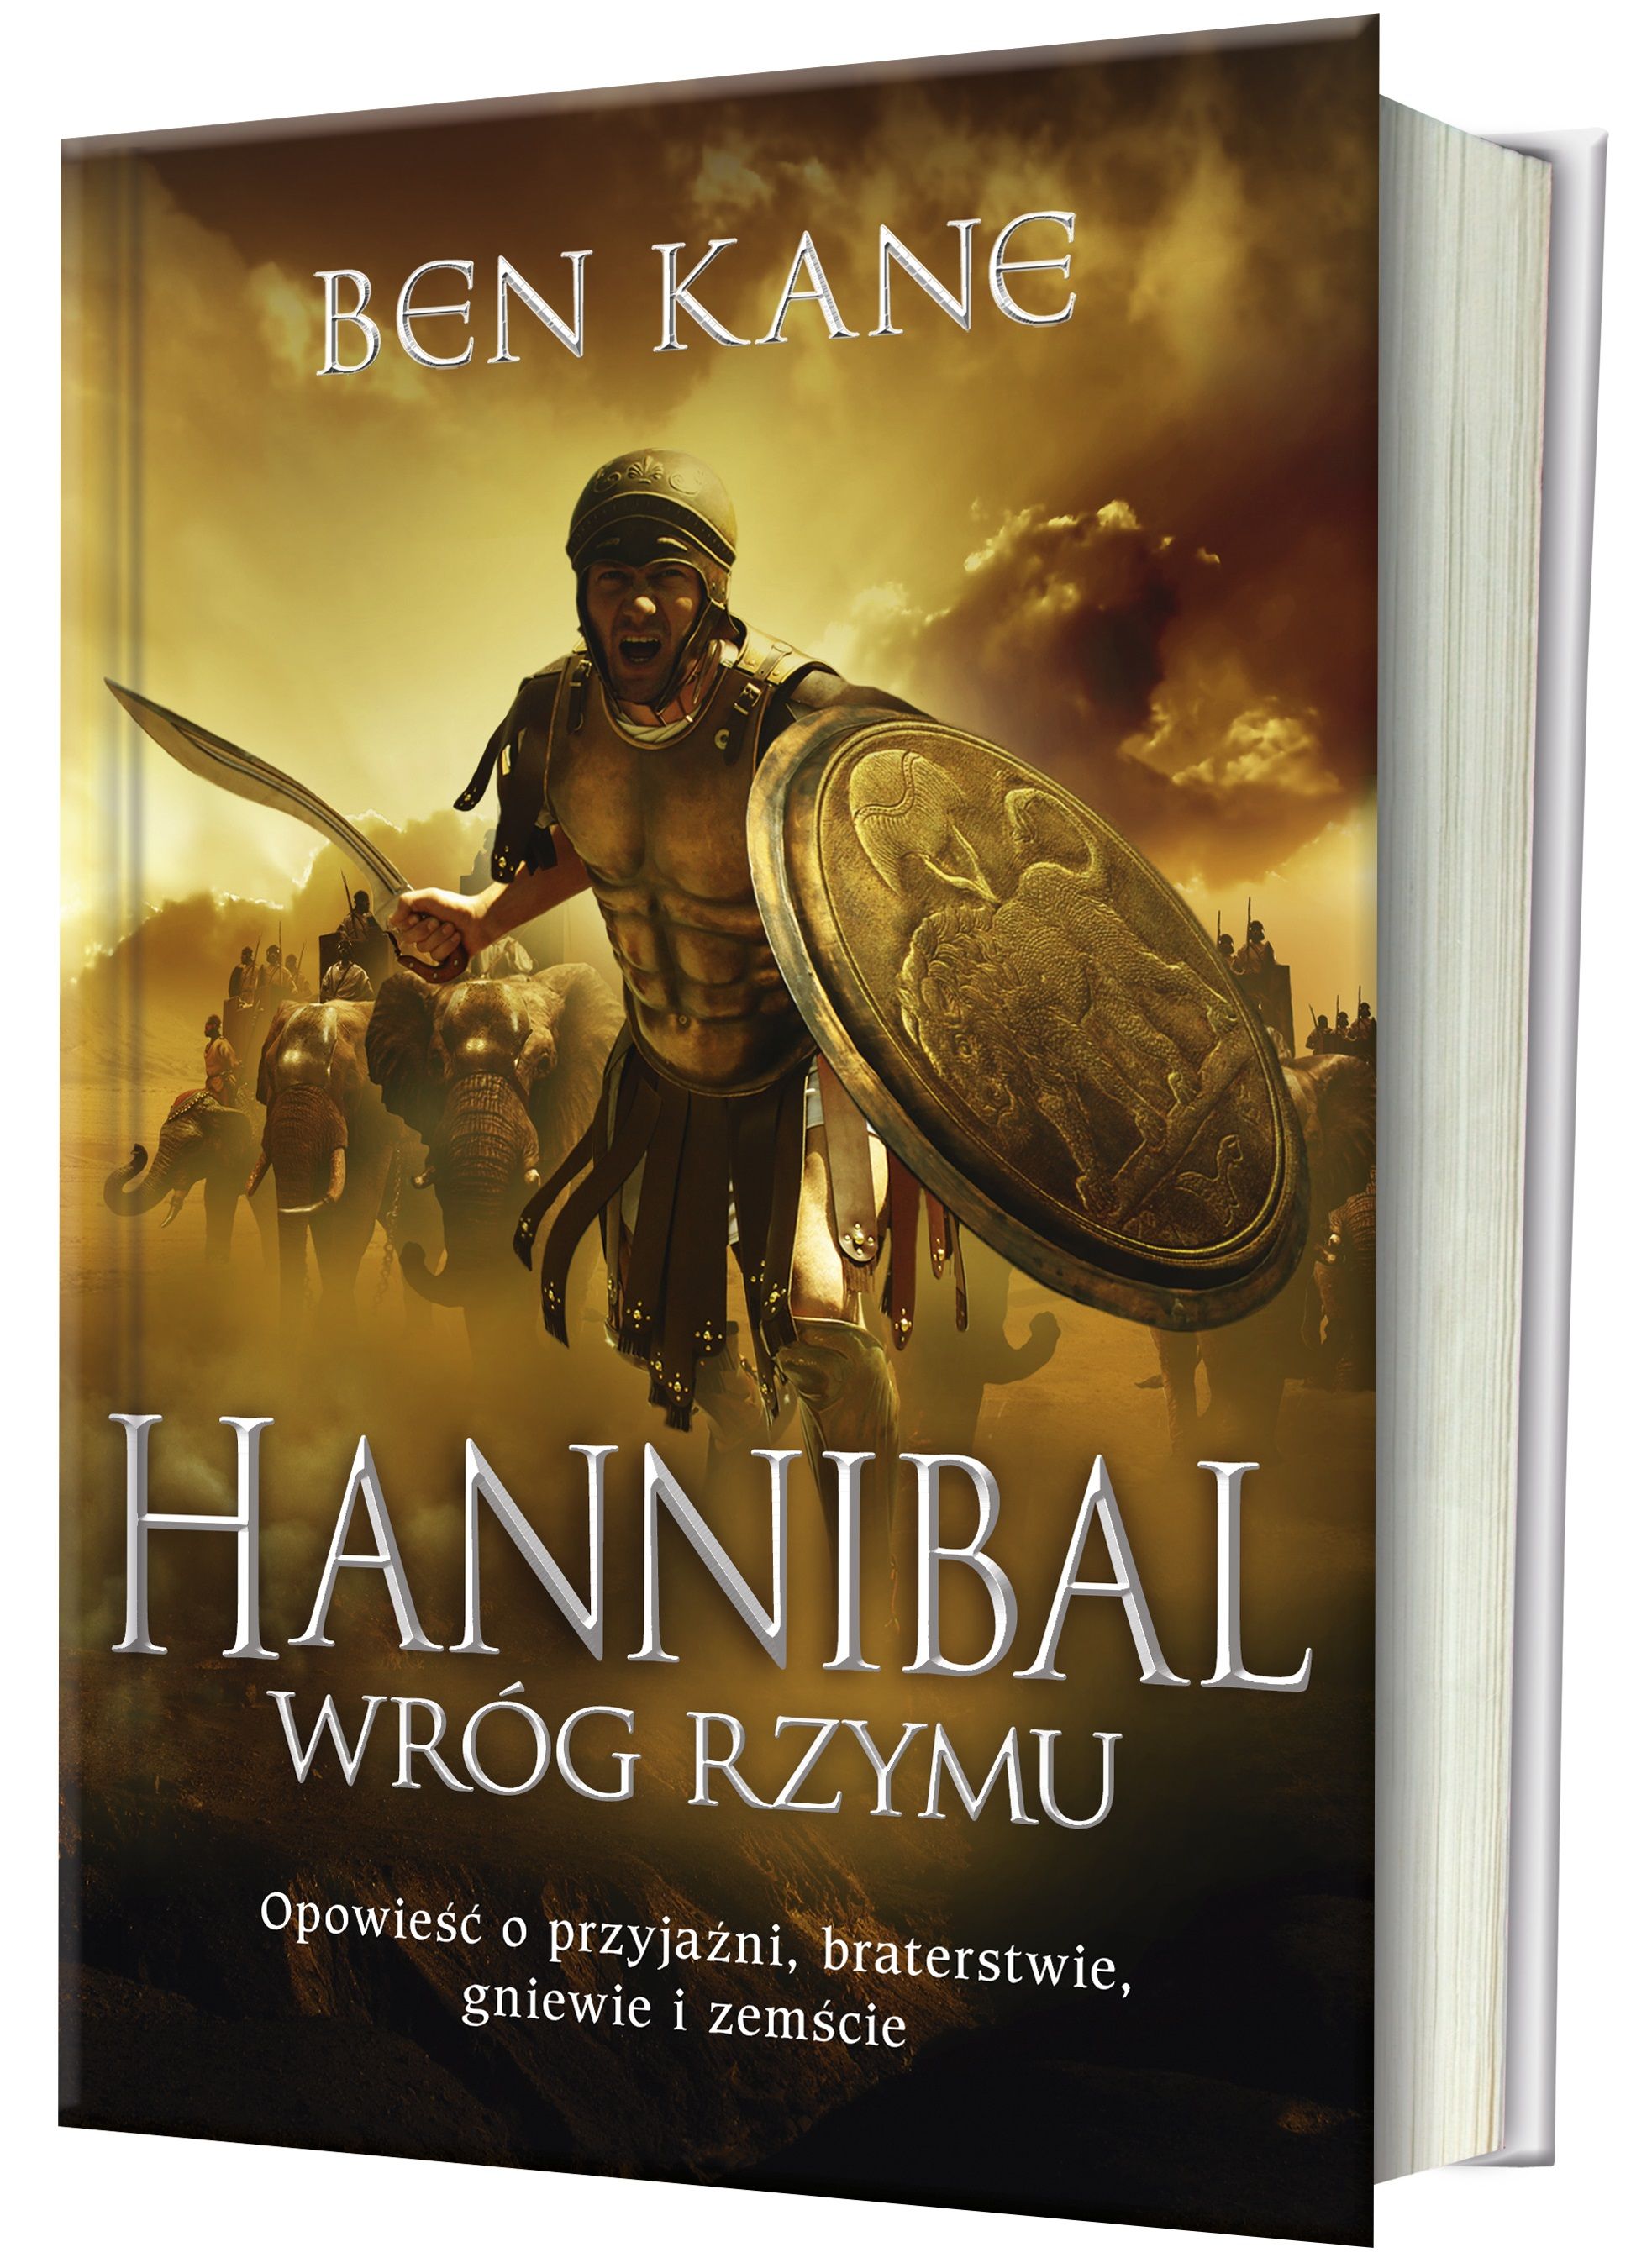 Ben Kane wraca z nową, błyskotliwą serią. „Hannibal. Wróg Rzymu” (Znak Horyzont 2018) to osadzona w czasach drugiej wojny punickiej opowieść o przyjaźni, braterstwie, gniewie i zemście.